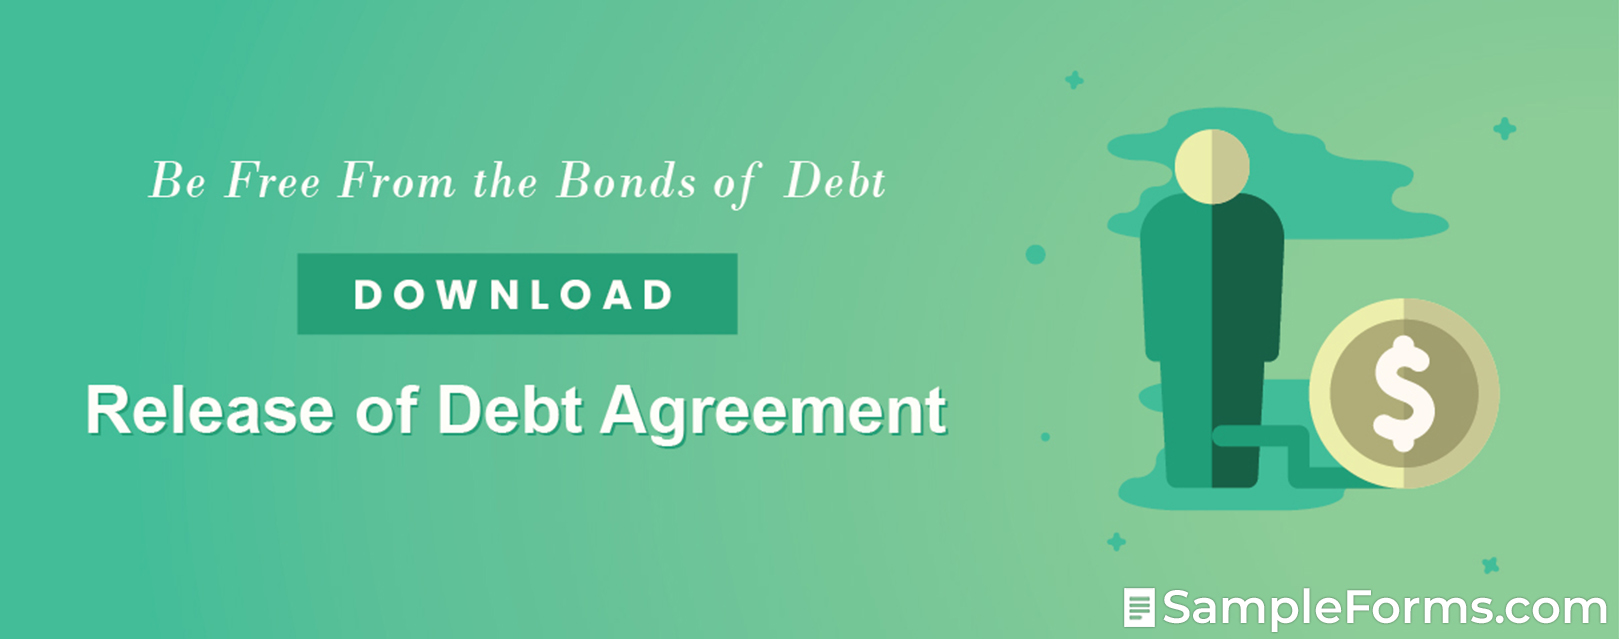 Release of Debt Agreement